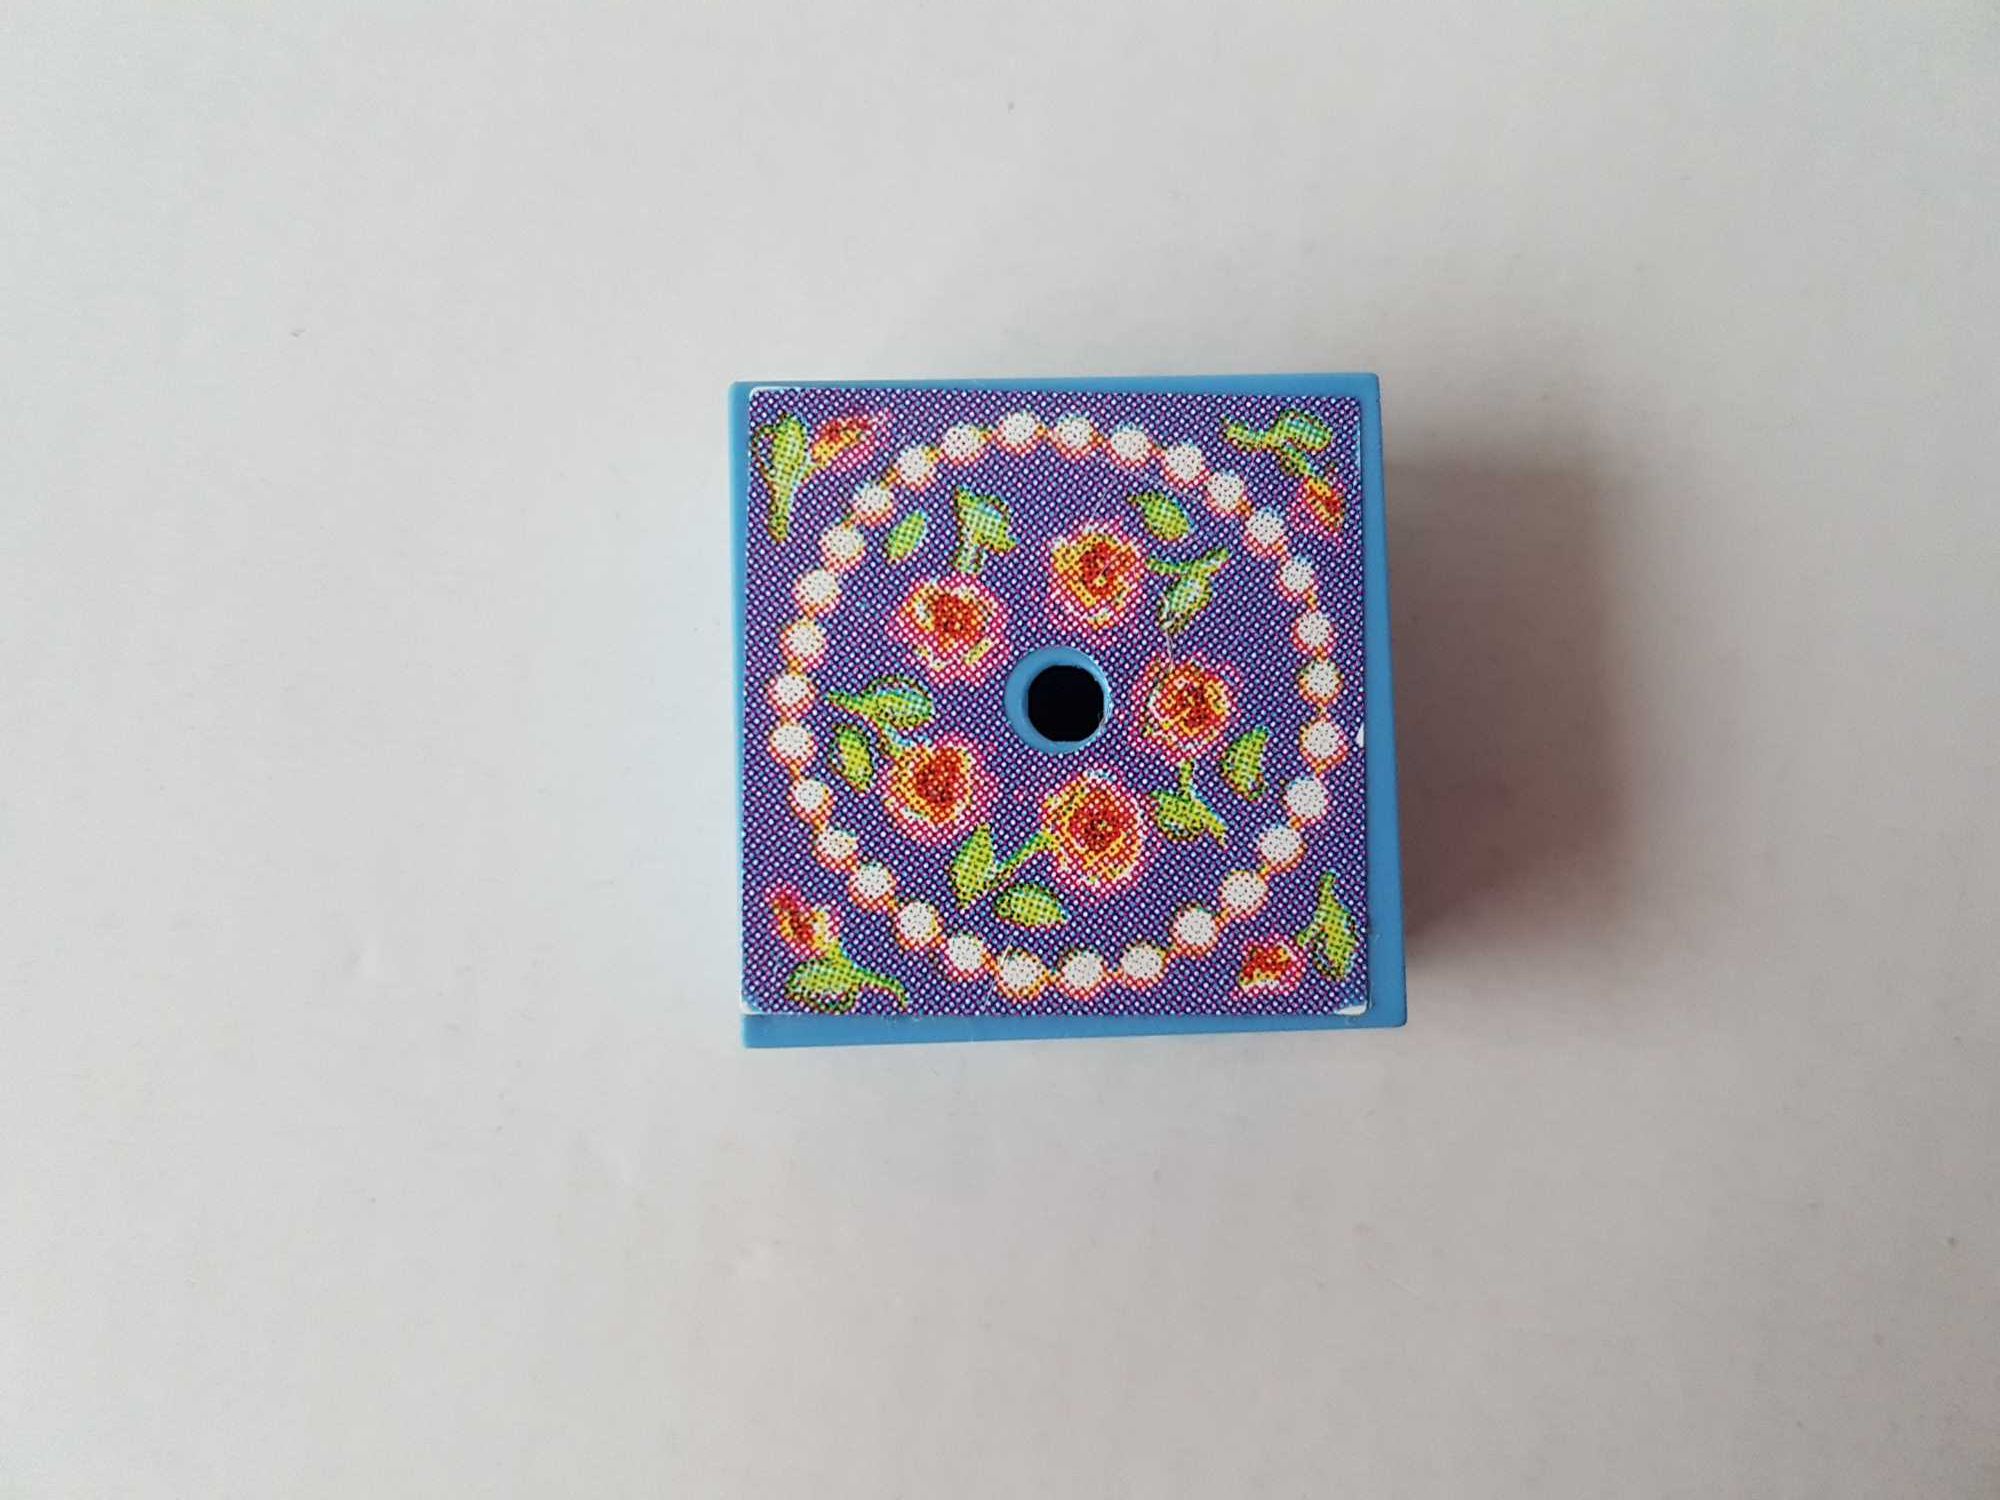 LEGO Scala niebieski otwierany pojemnik pudełko + różowe hantle 3114